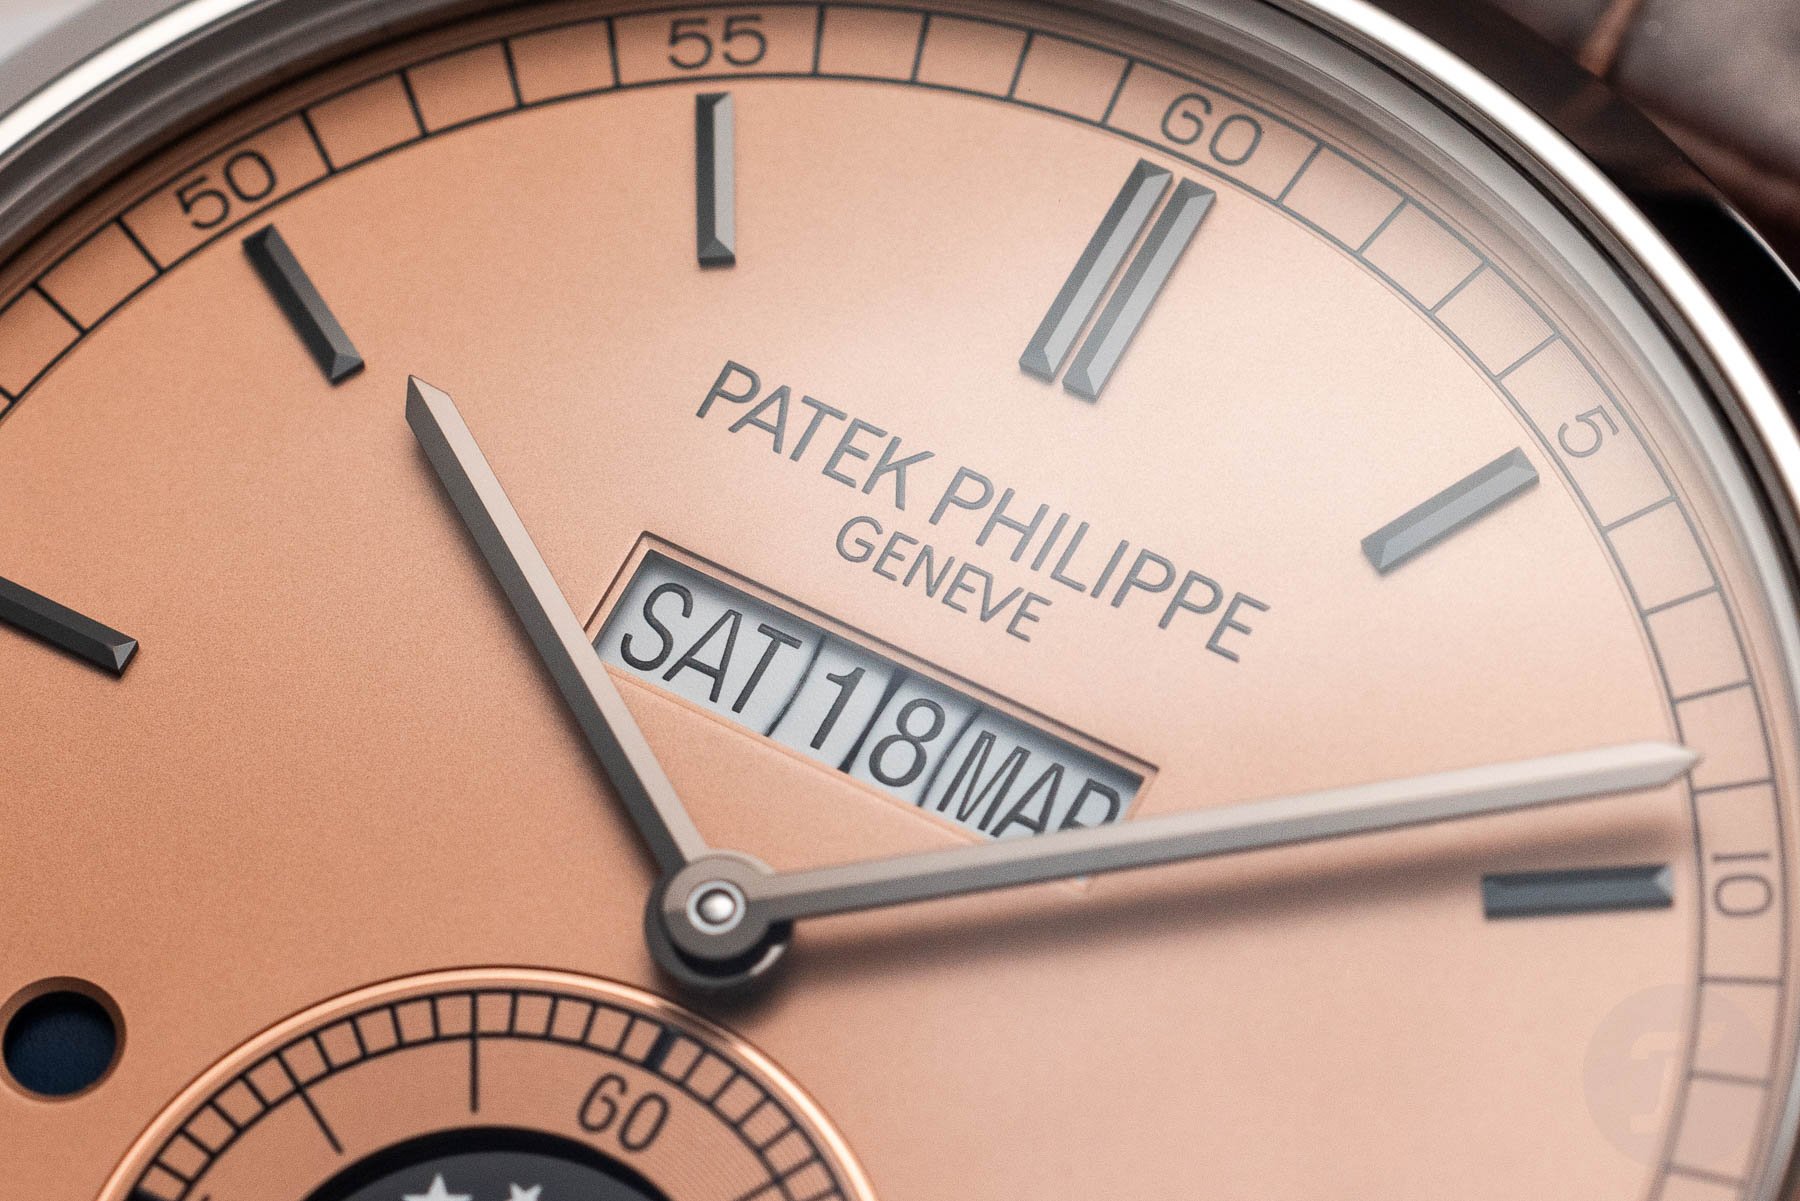 Patek Philippe 5236P In-Line Perpetual Calendar dial close-up